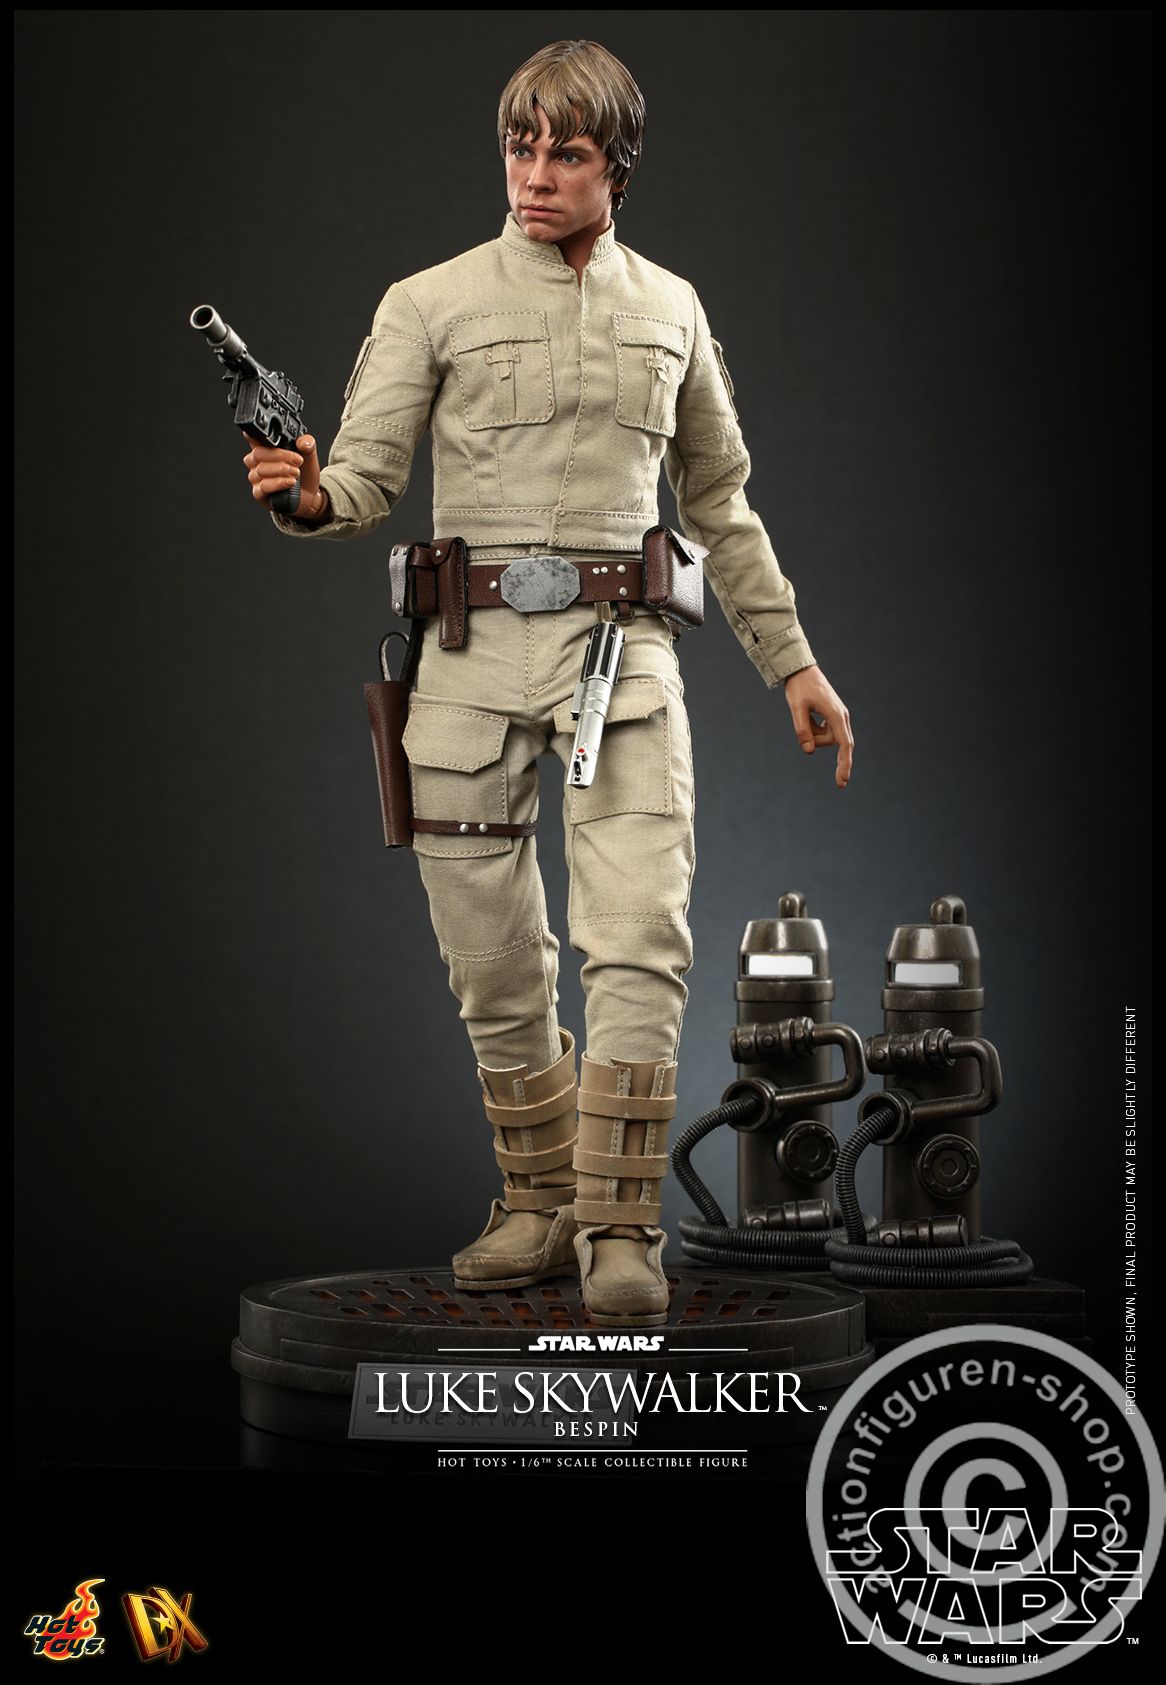 Star Wars: The Empire Strikes Back - Luke Skywalker